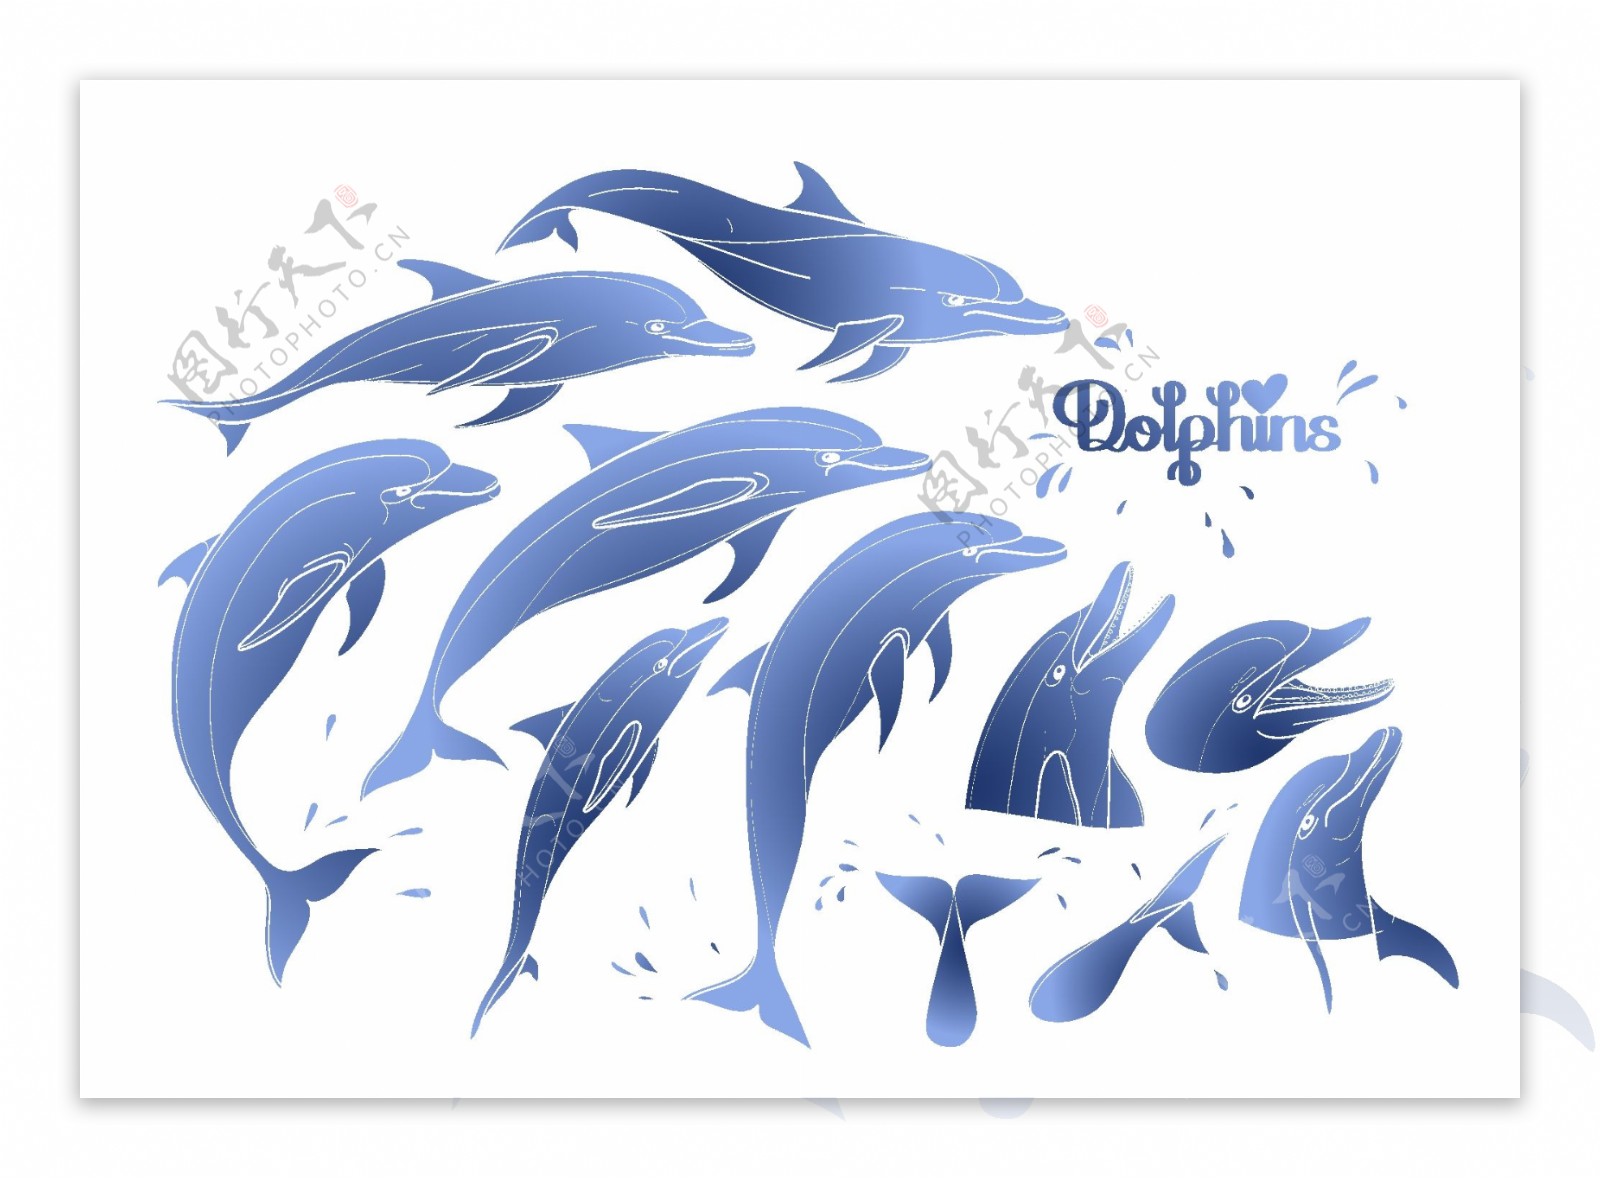 时尚手绘蓝色海豚插画